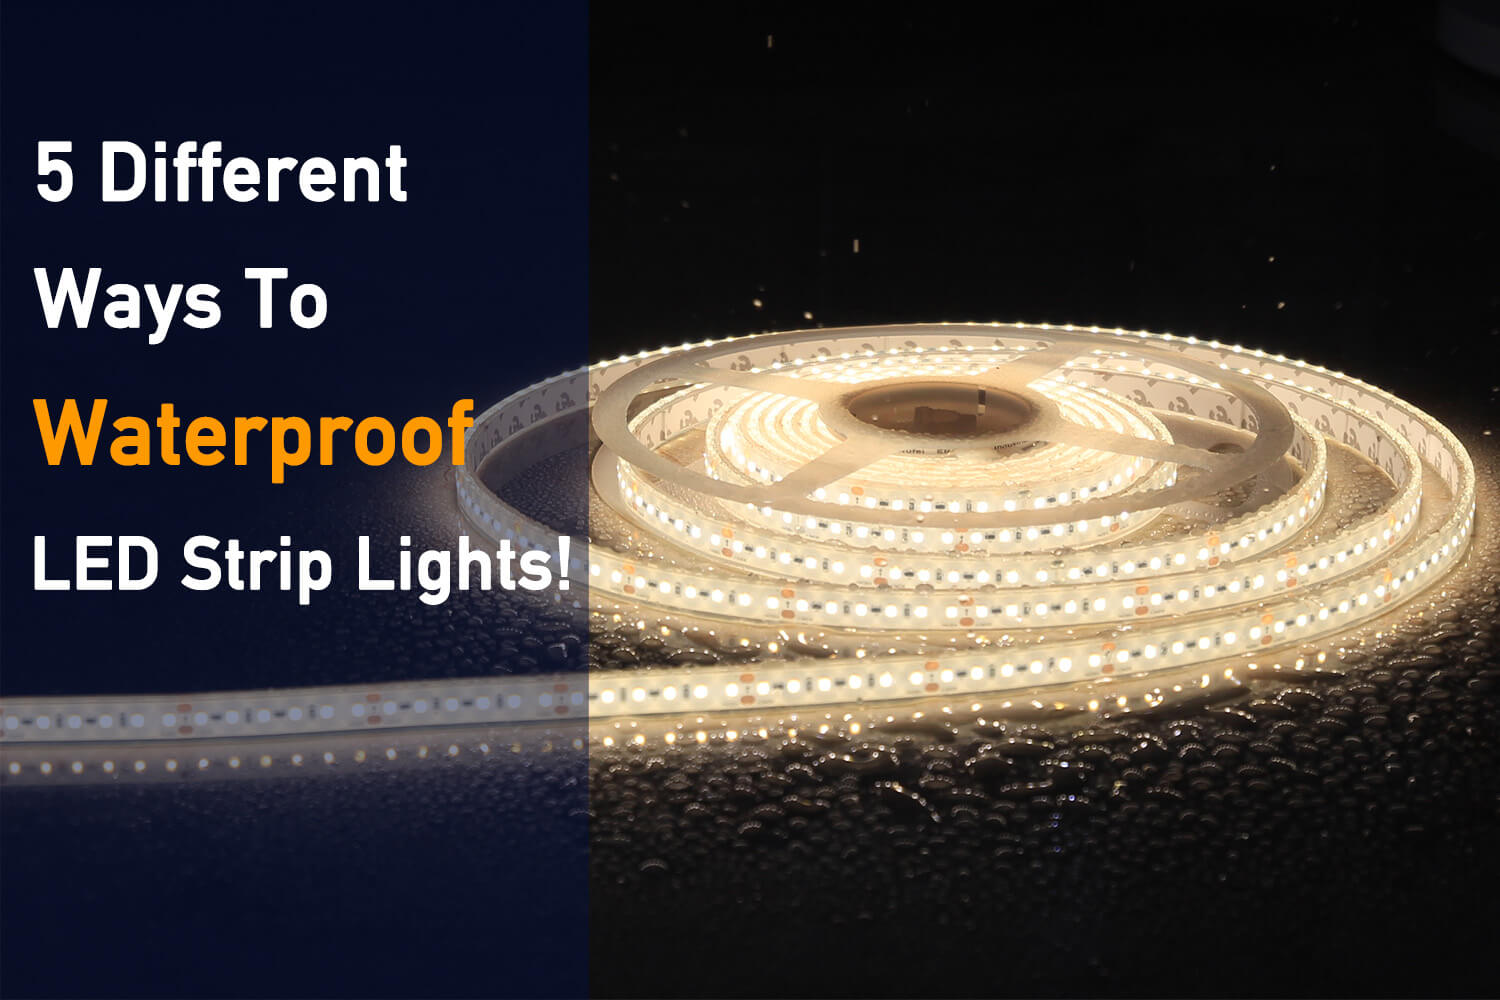 How long do LED Strip Lights last?